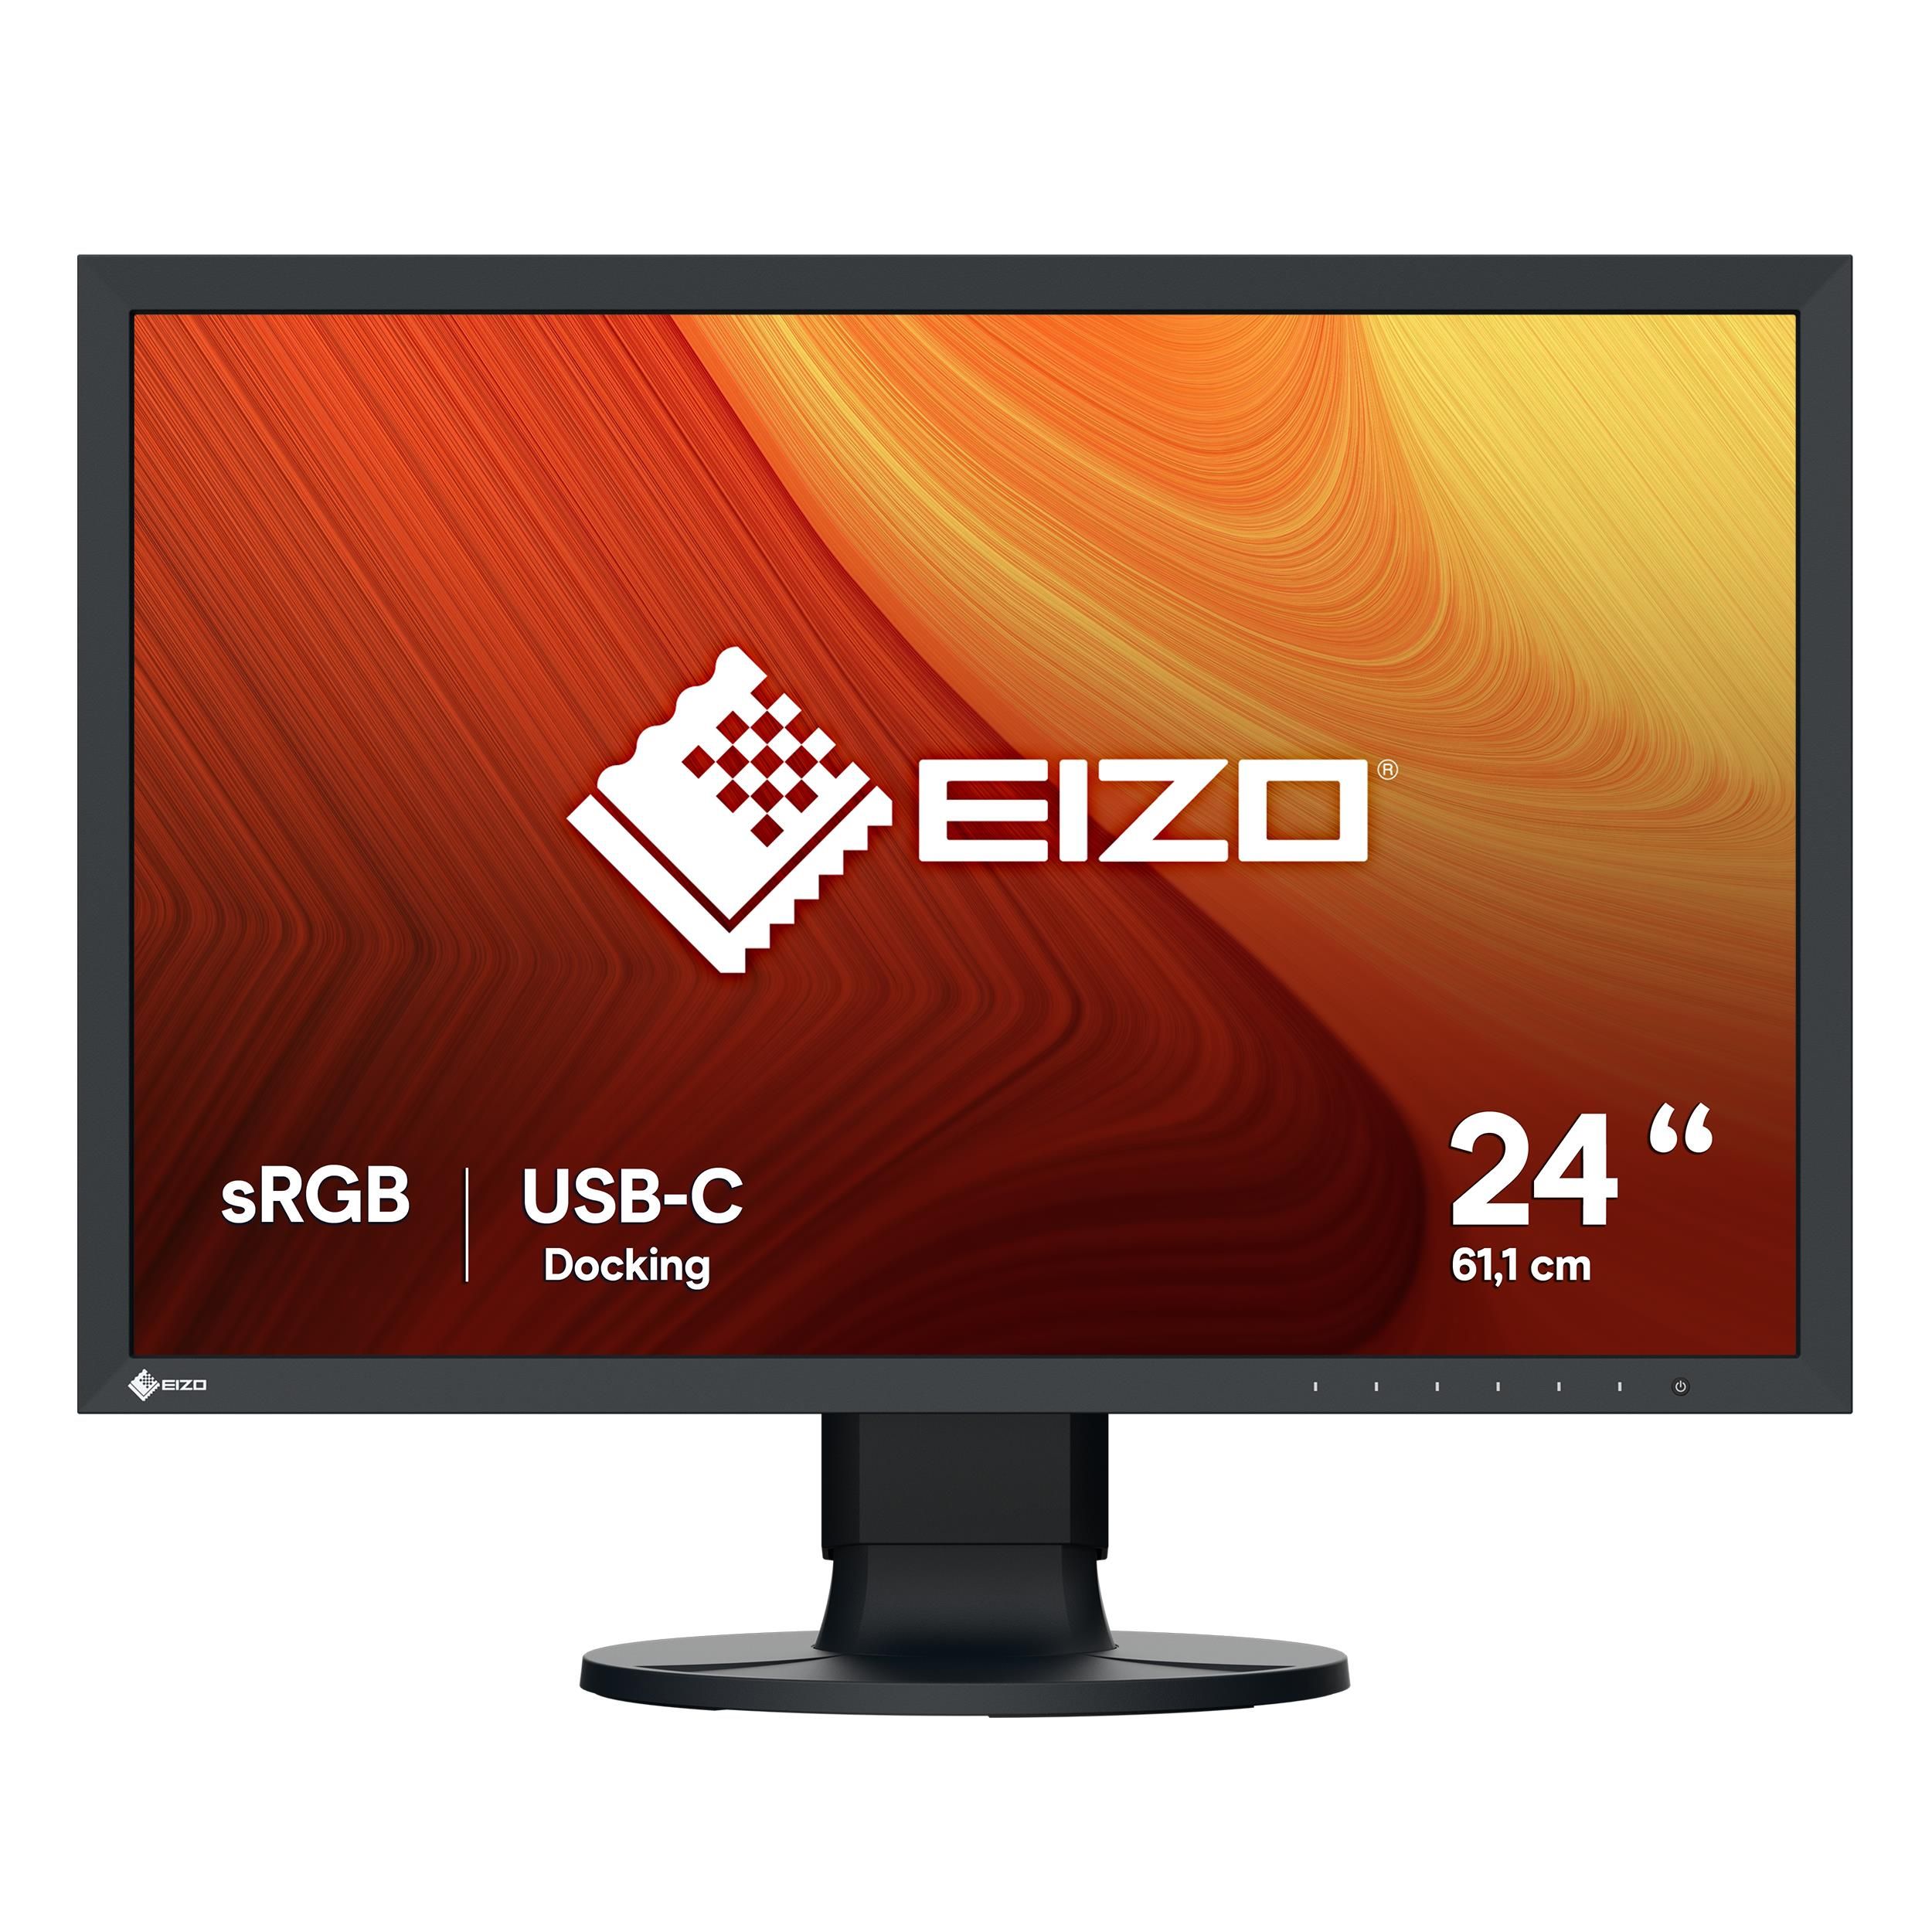 EIZO ColorEdge CS2400R Monitor